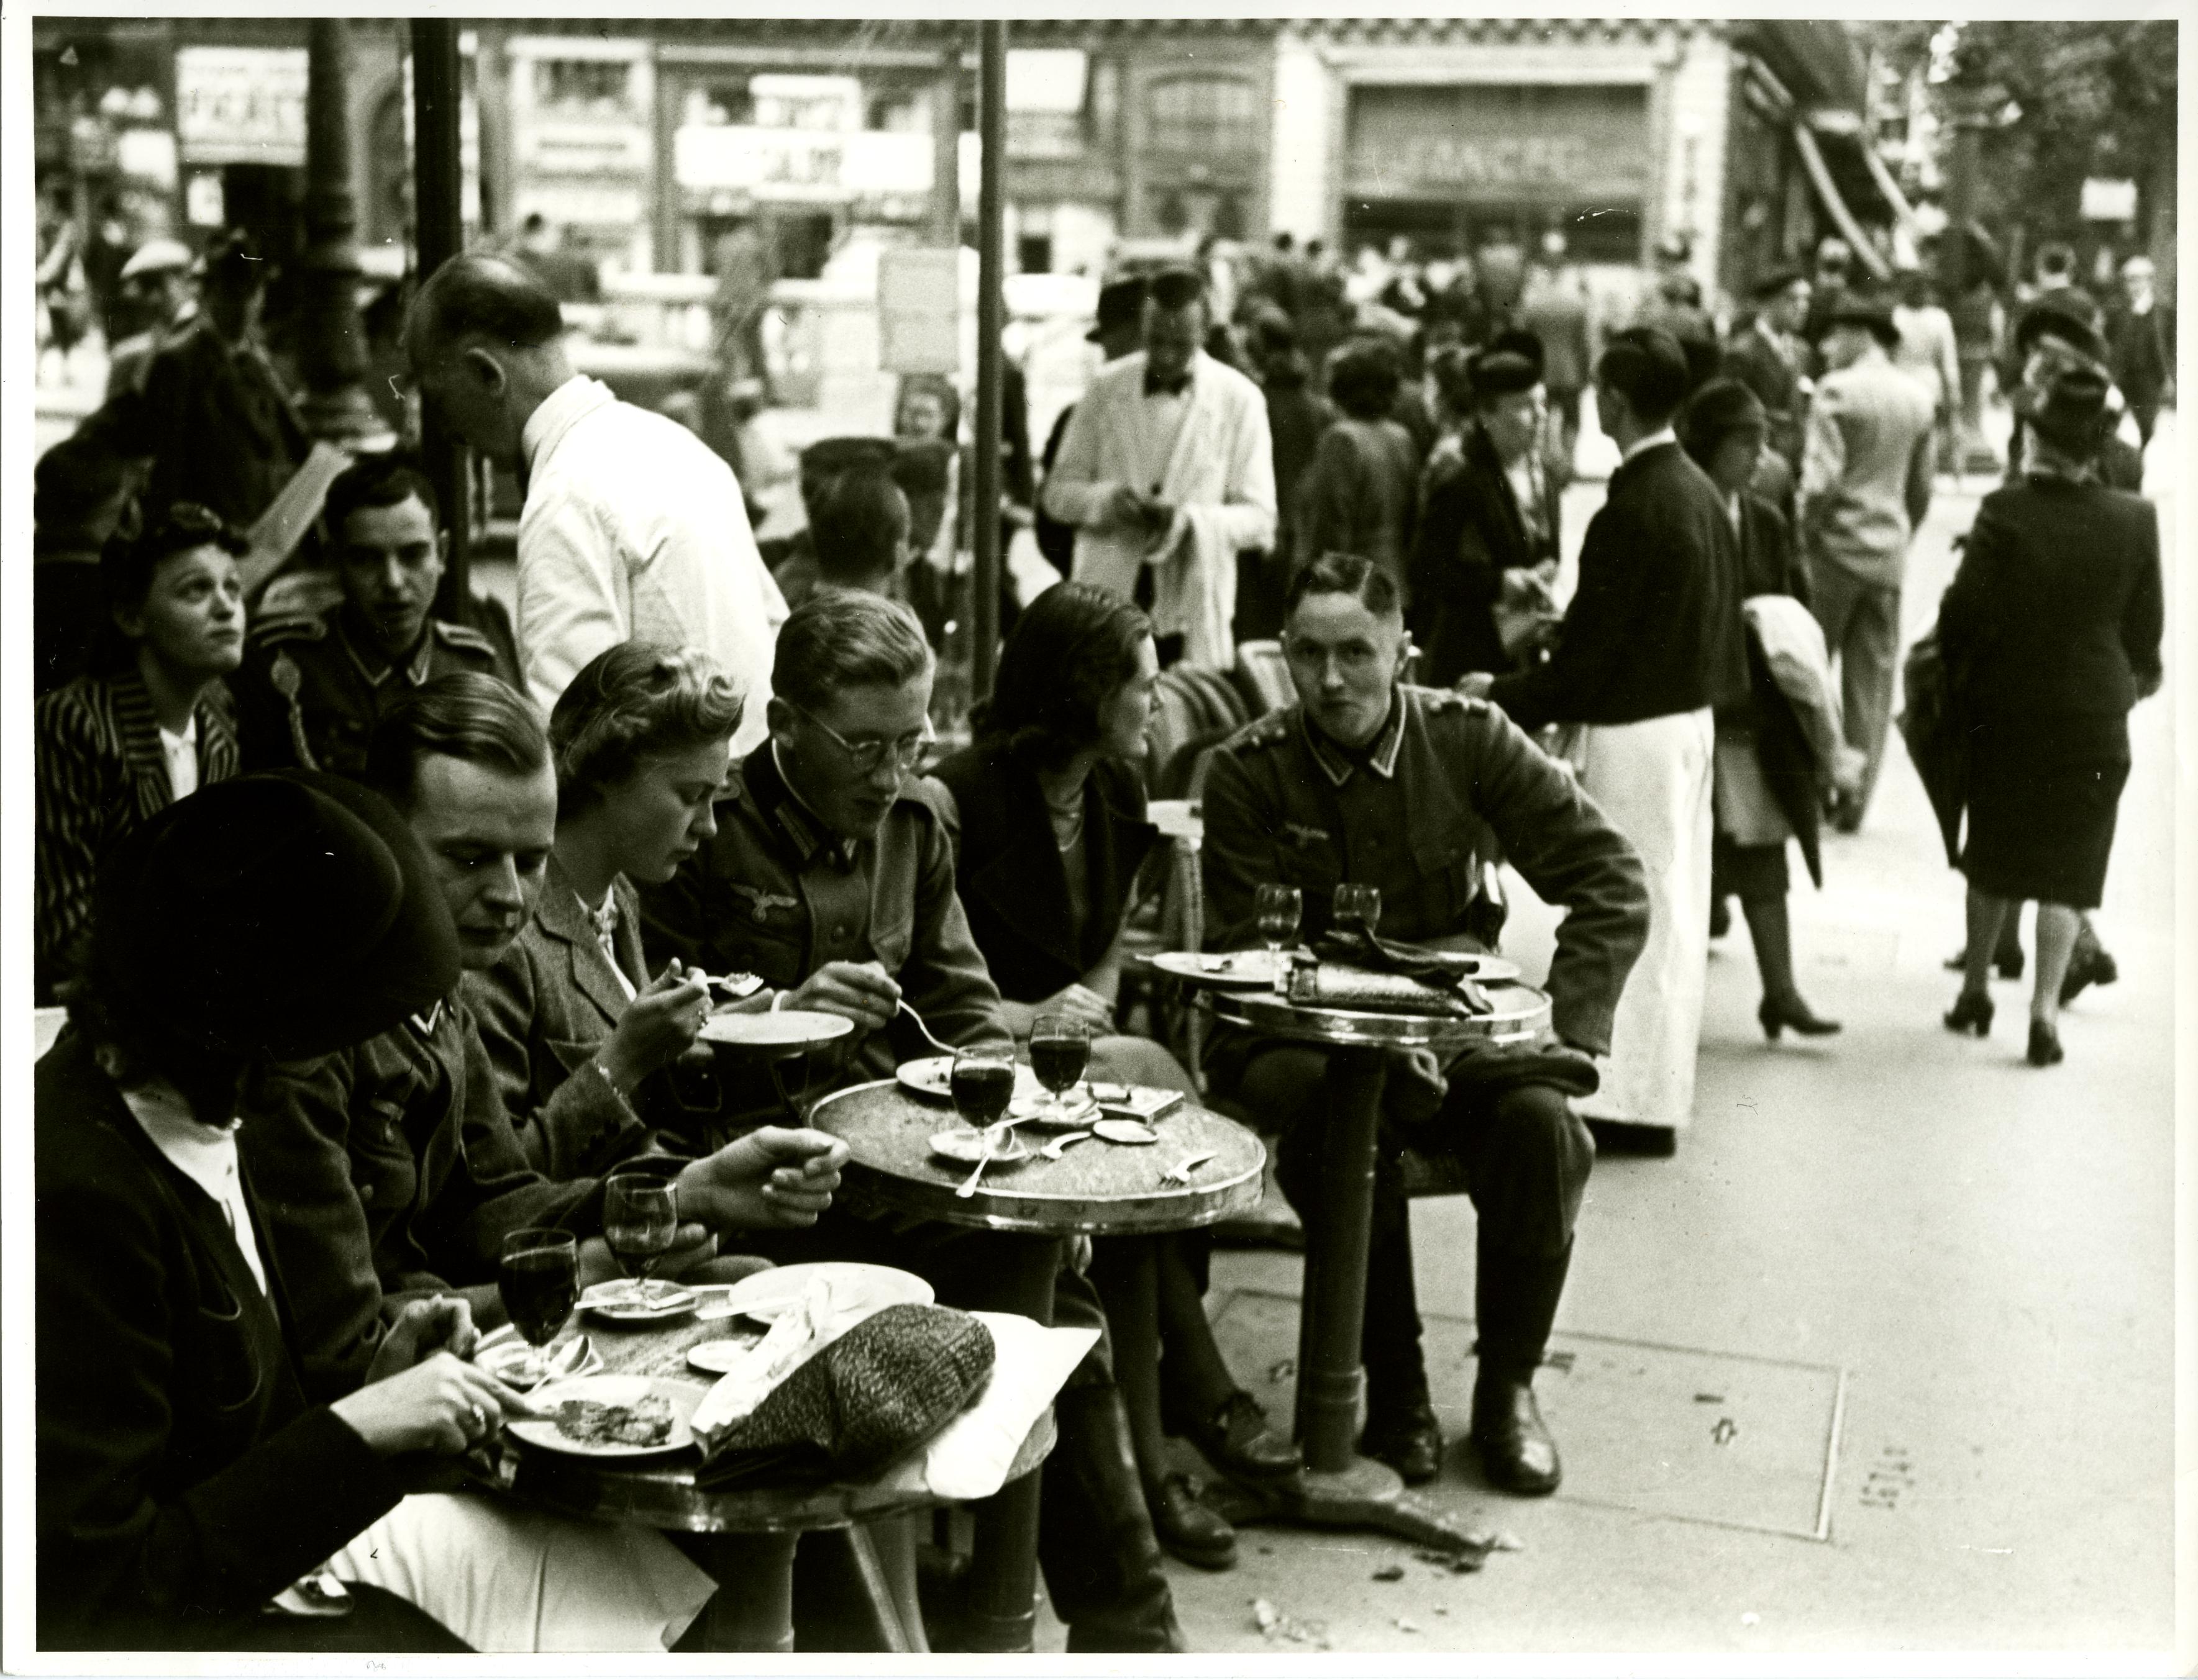 [Foto: Gronefeld, Gerhard "Deutsche Soldaten und Angestellte der Militärverwaltung in einem Straßencafé in Paris"]", 1940